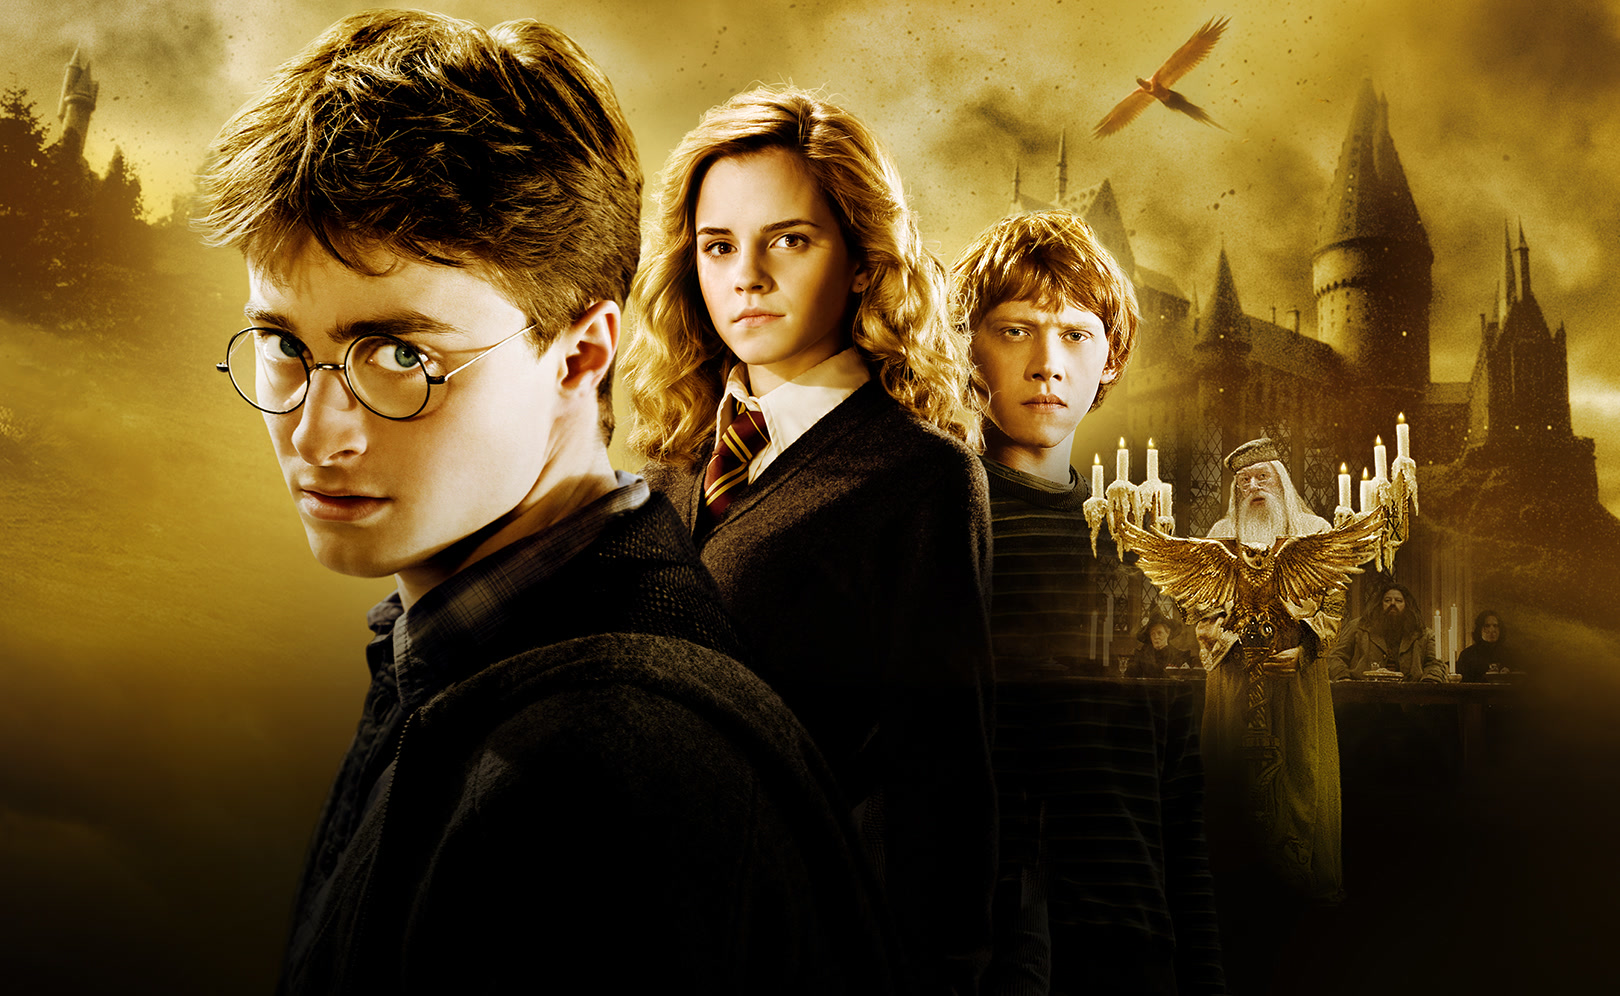 La magia oltre Hogwarts: David Yates accenna a un nuovo film di Harry Potter!